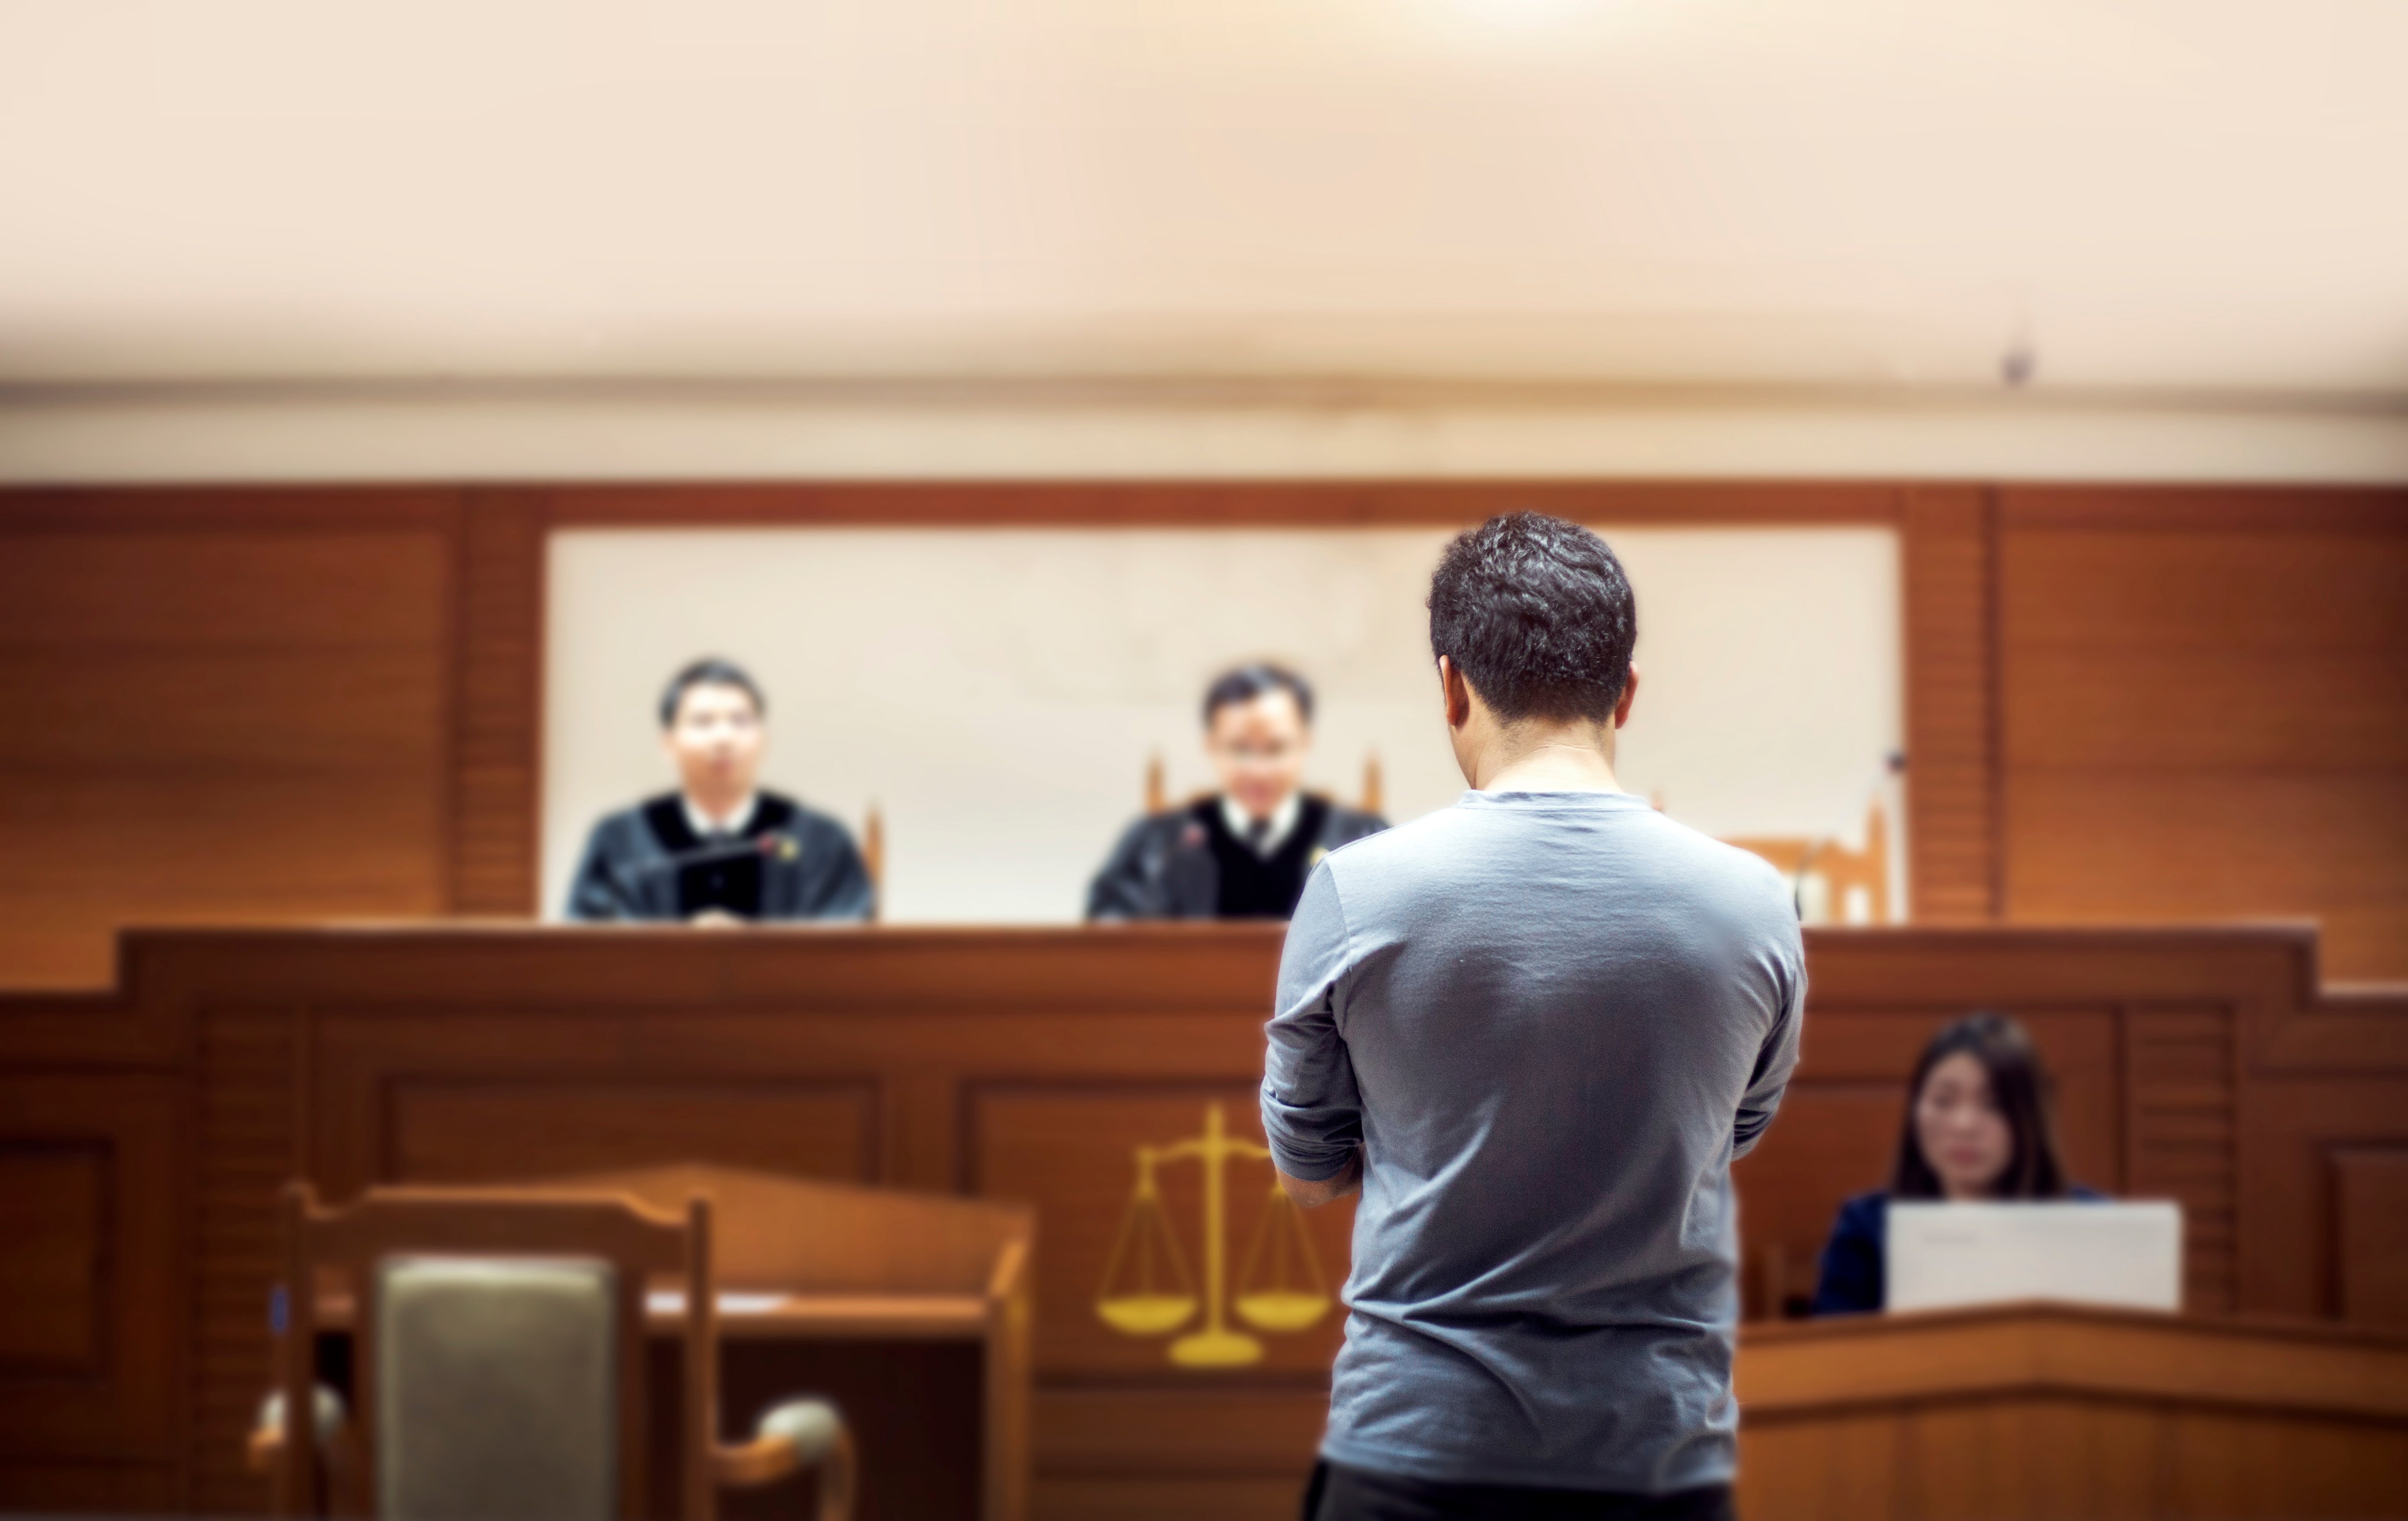 Rückseite eines Zeugen im Gespräch mit dem Richter vor Gericht | Quelle: Shutterstock